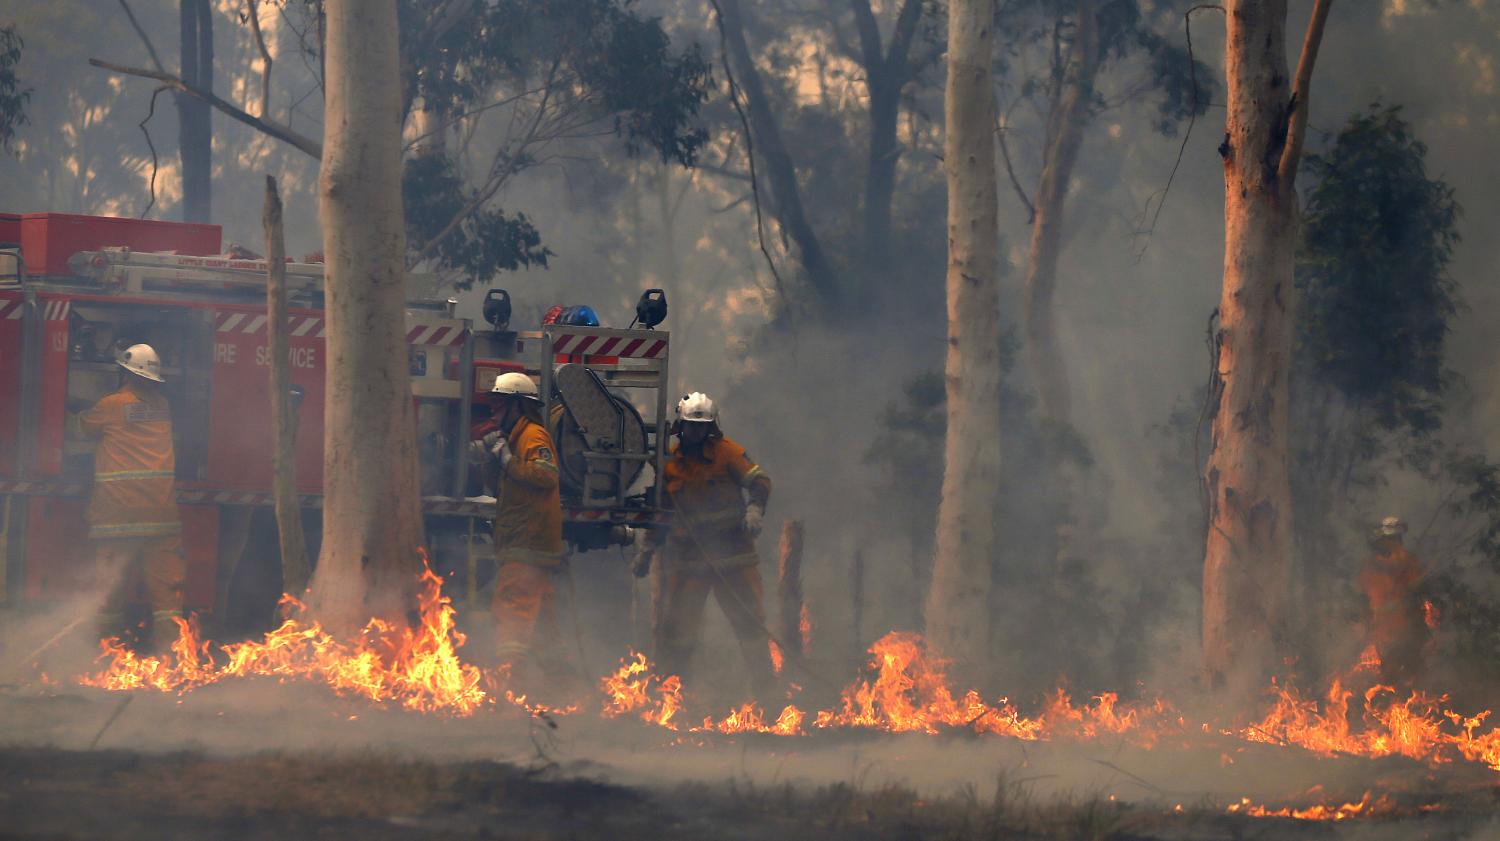 Incendies en Australie: qui est responsable?